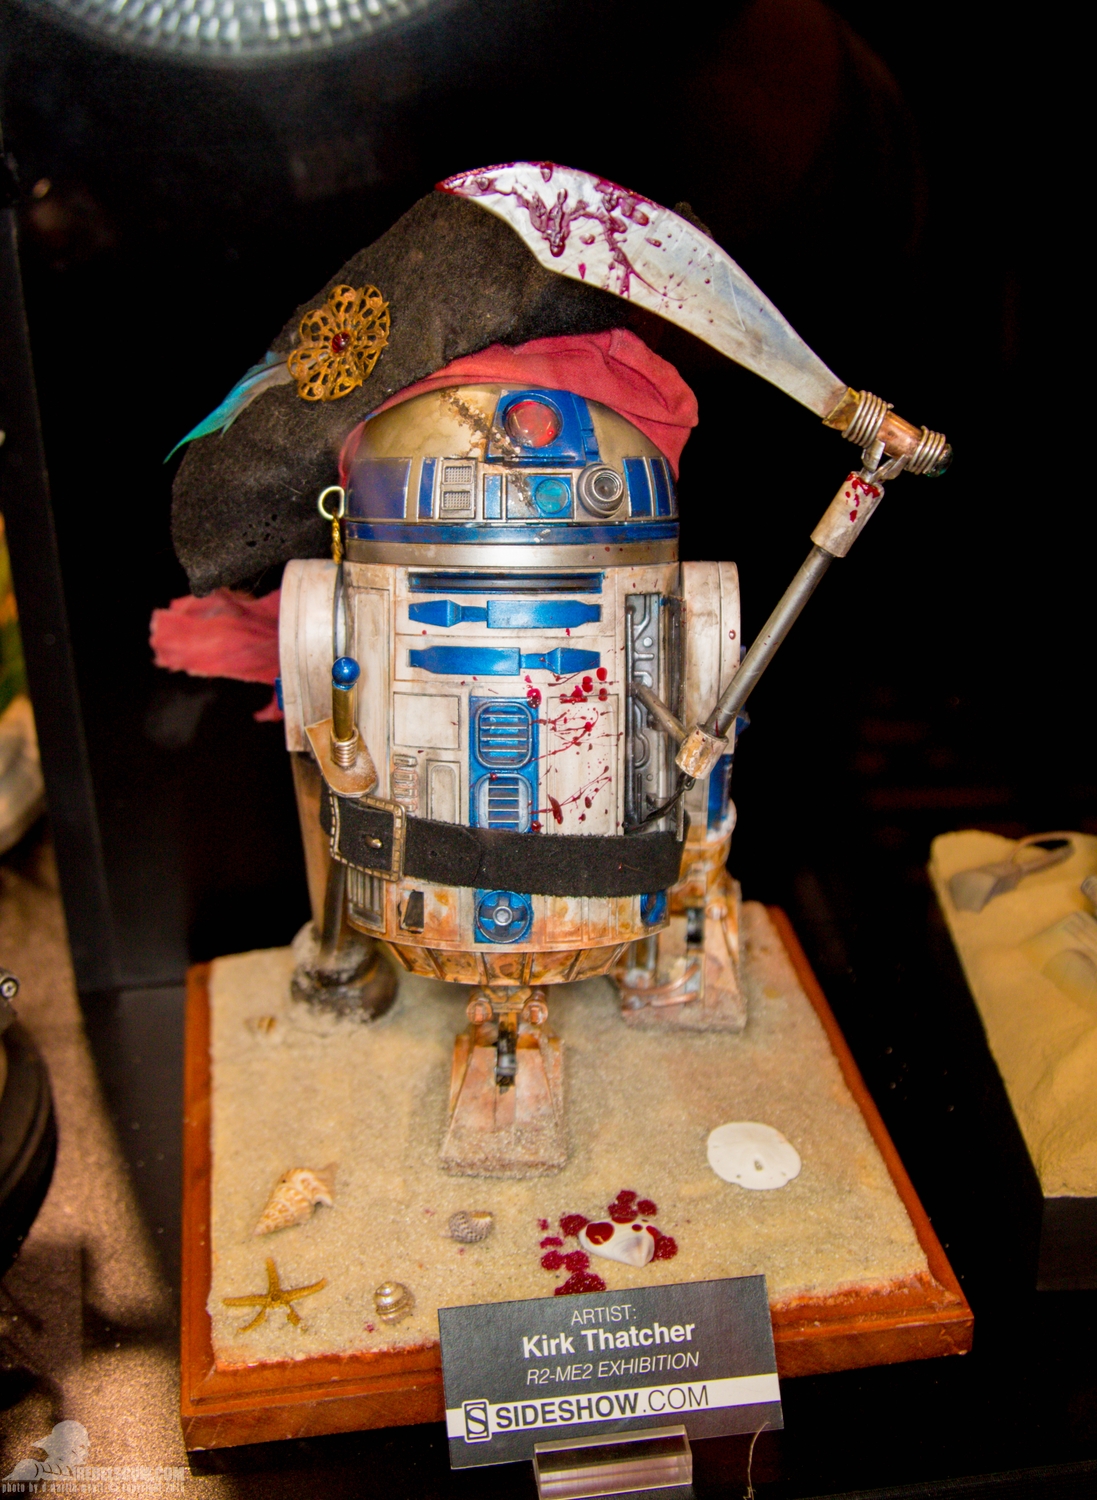 Star-Wars-Celebration-Anaheim-2015-Sideshow-R2-Me2-Exhibit-021.jpg